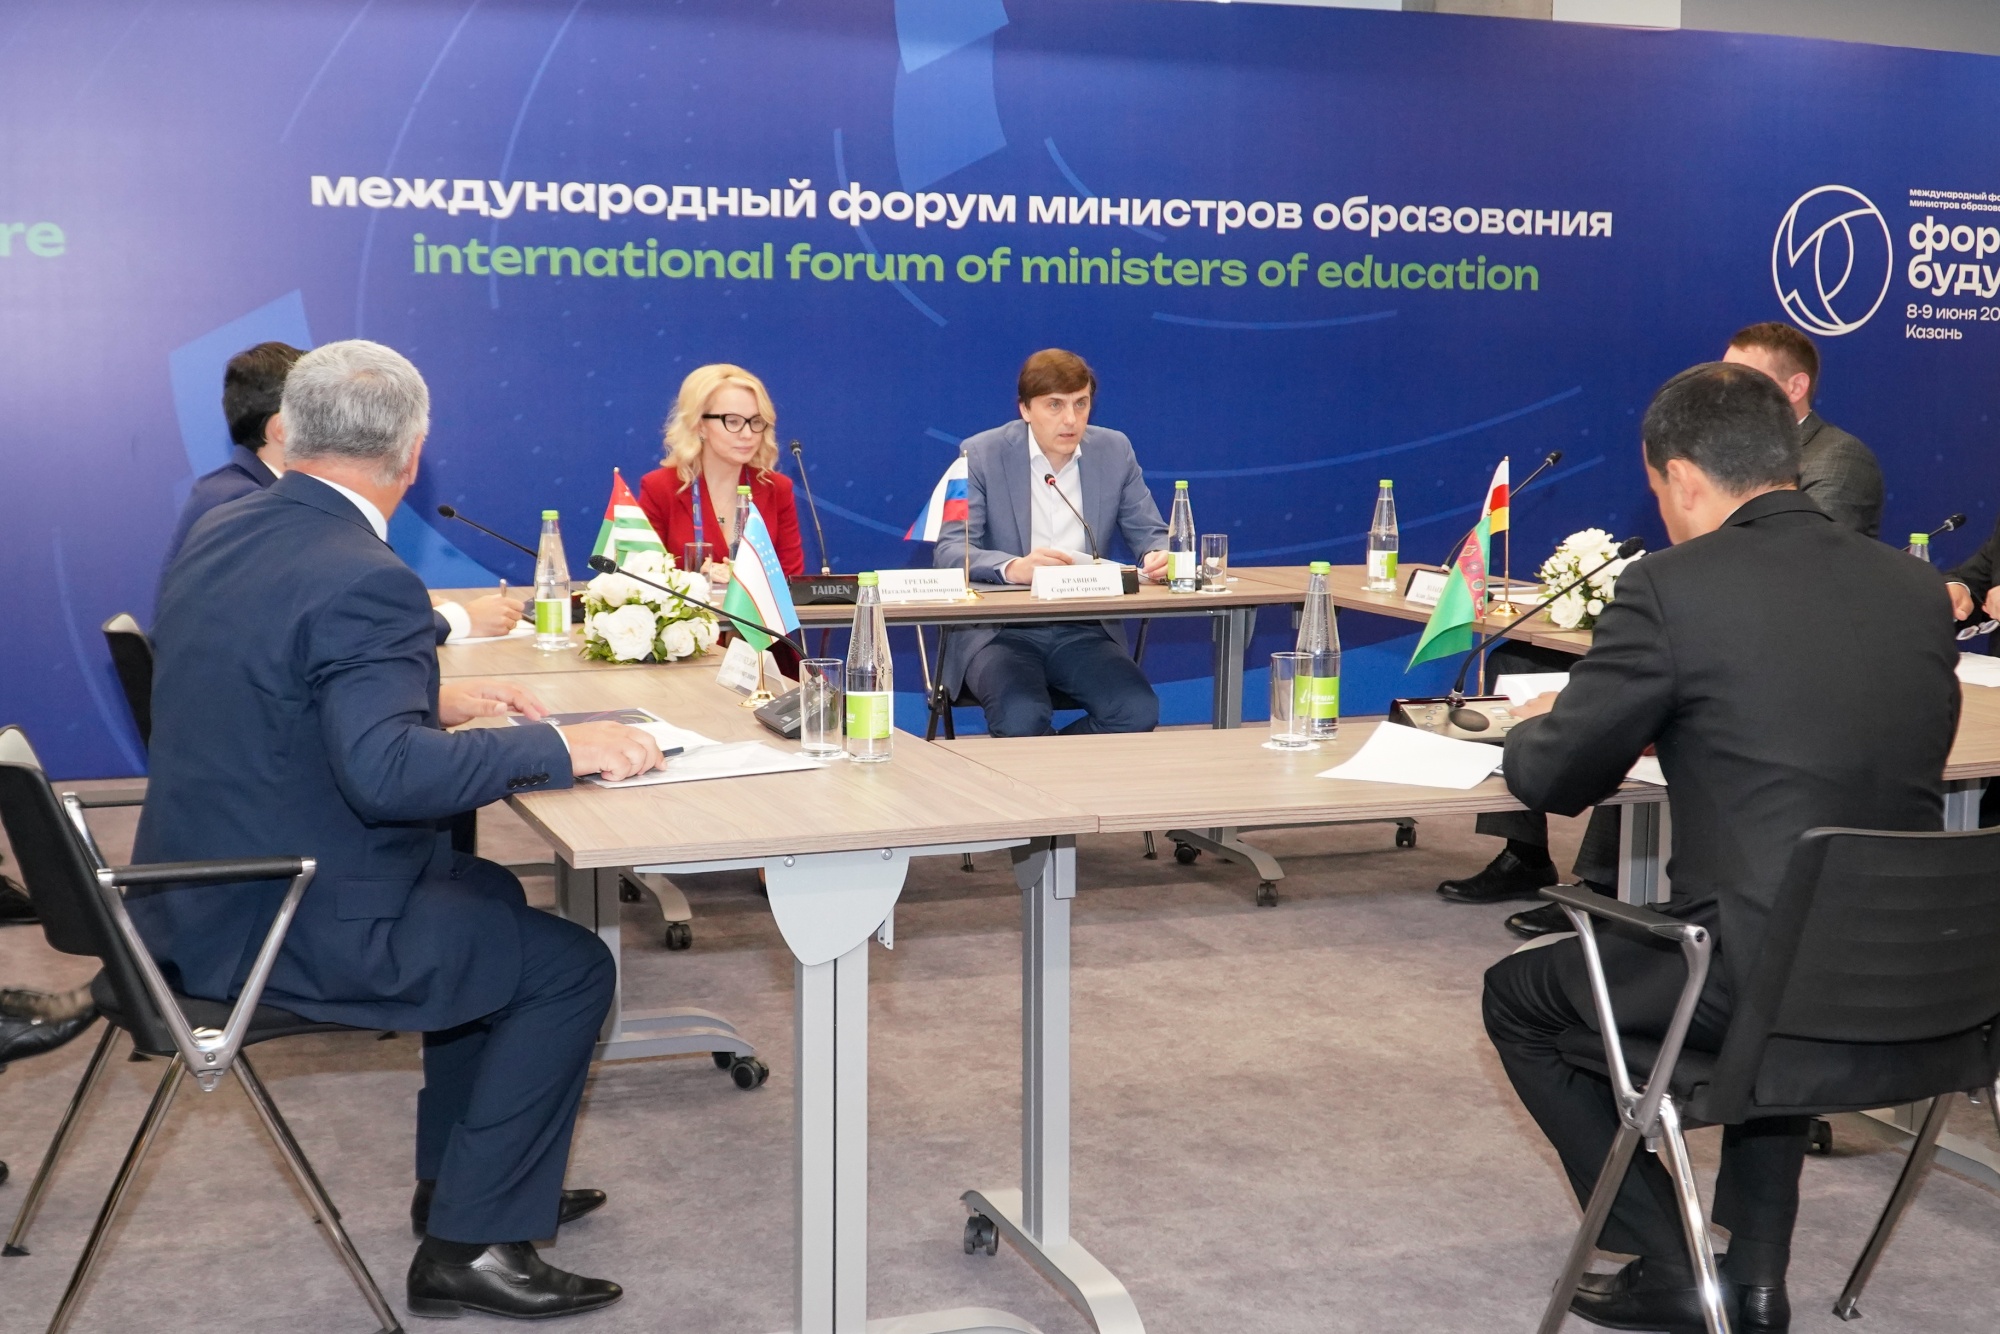 Сергей Кравцов назвал главным итогом форума «Формируя будущее» взаимную готовность стран к сотрудничеству